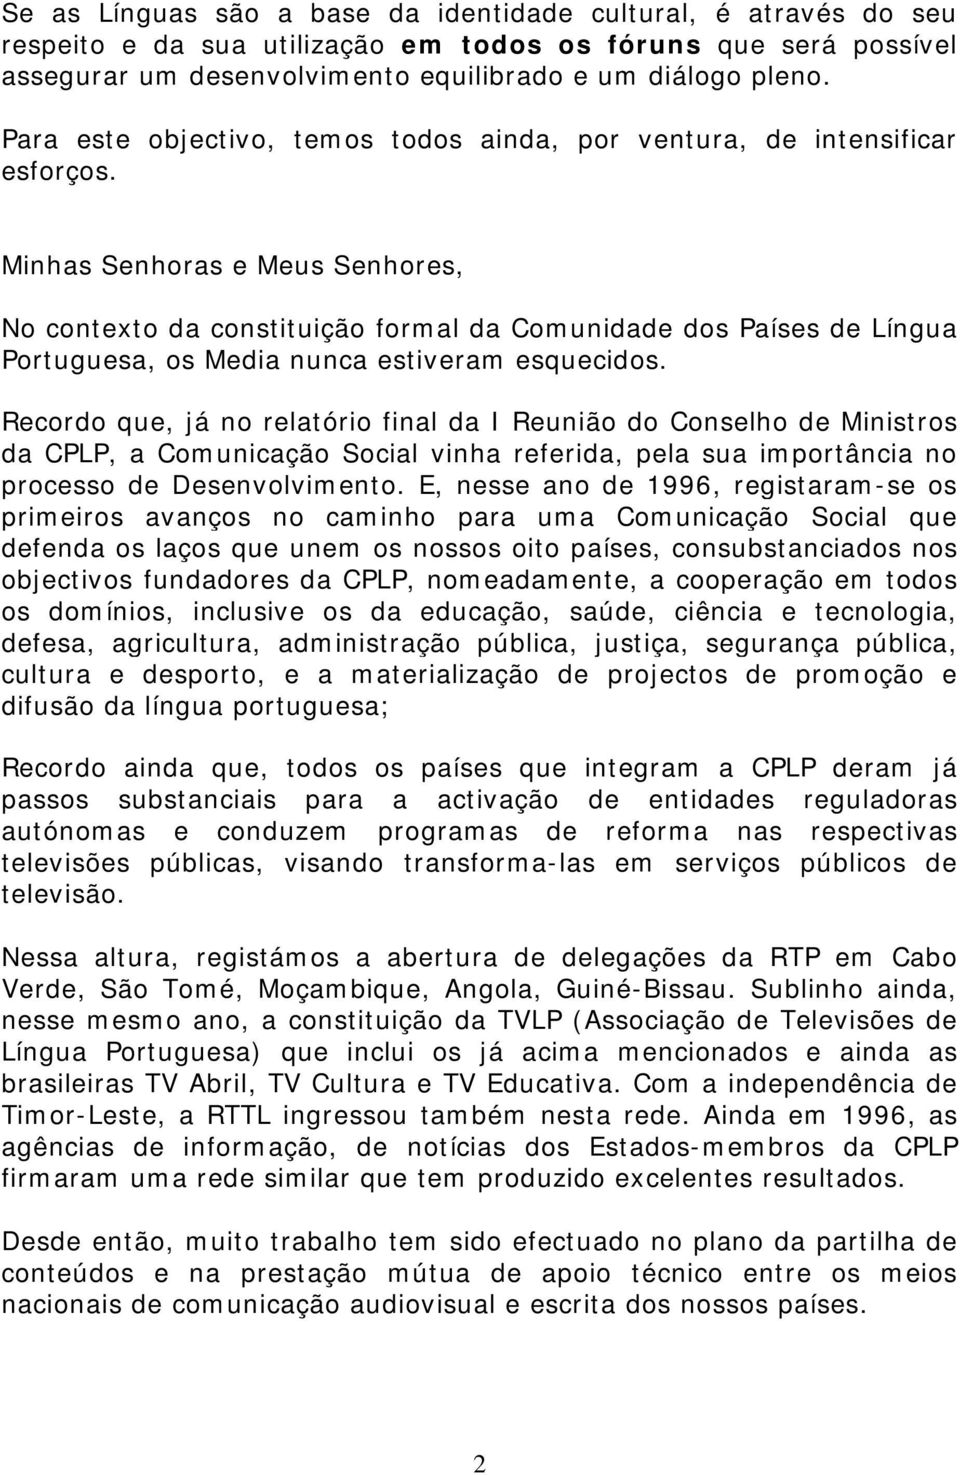 Minhas Senhoras e Meus Senhores, No contexto da constituição formal da Comunidade dos Países de Língua Portuguesa, os Media nunca estiveram esquecidos.